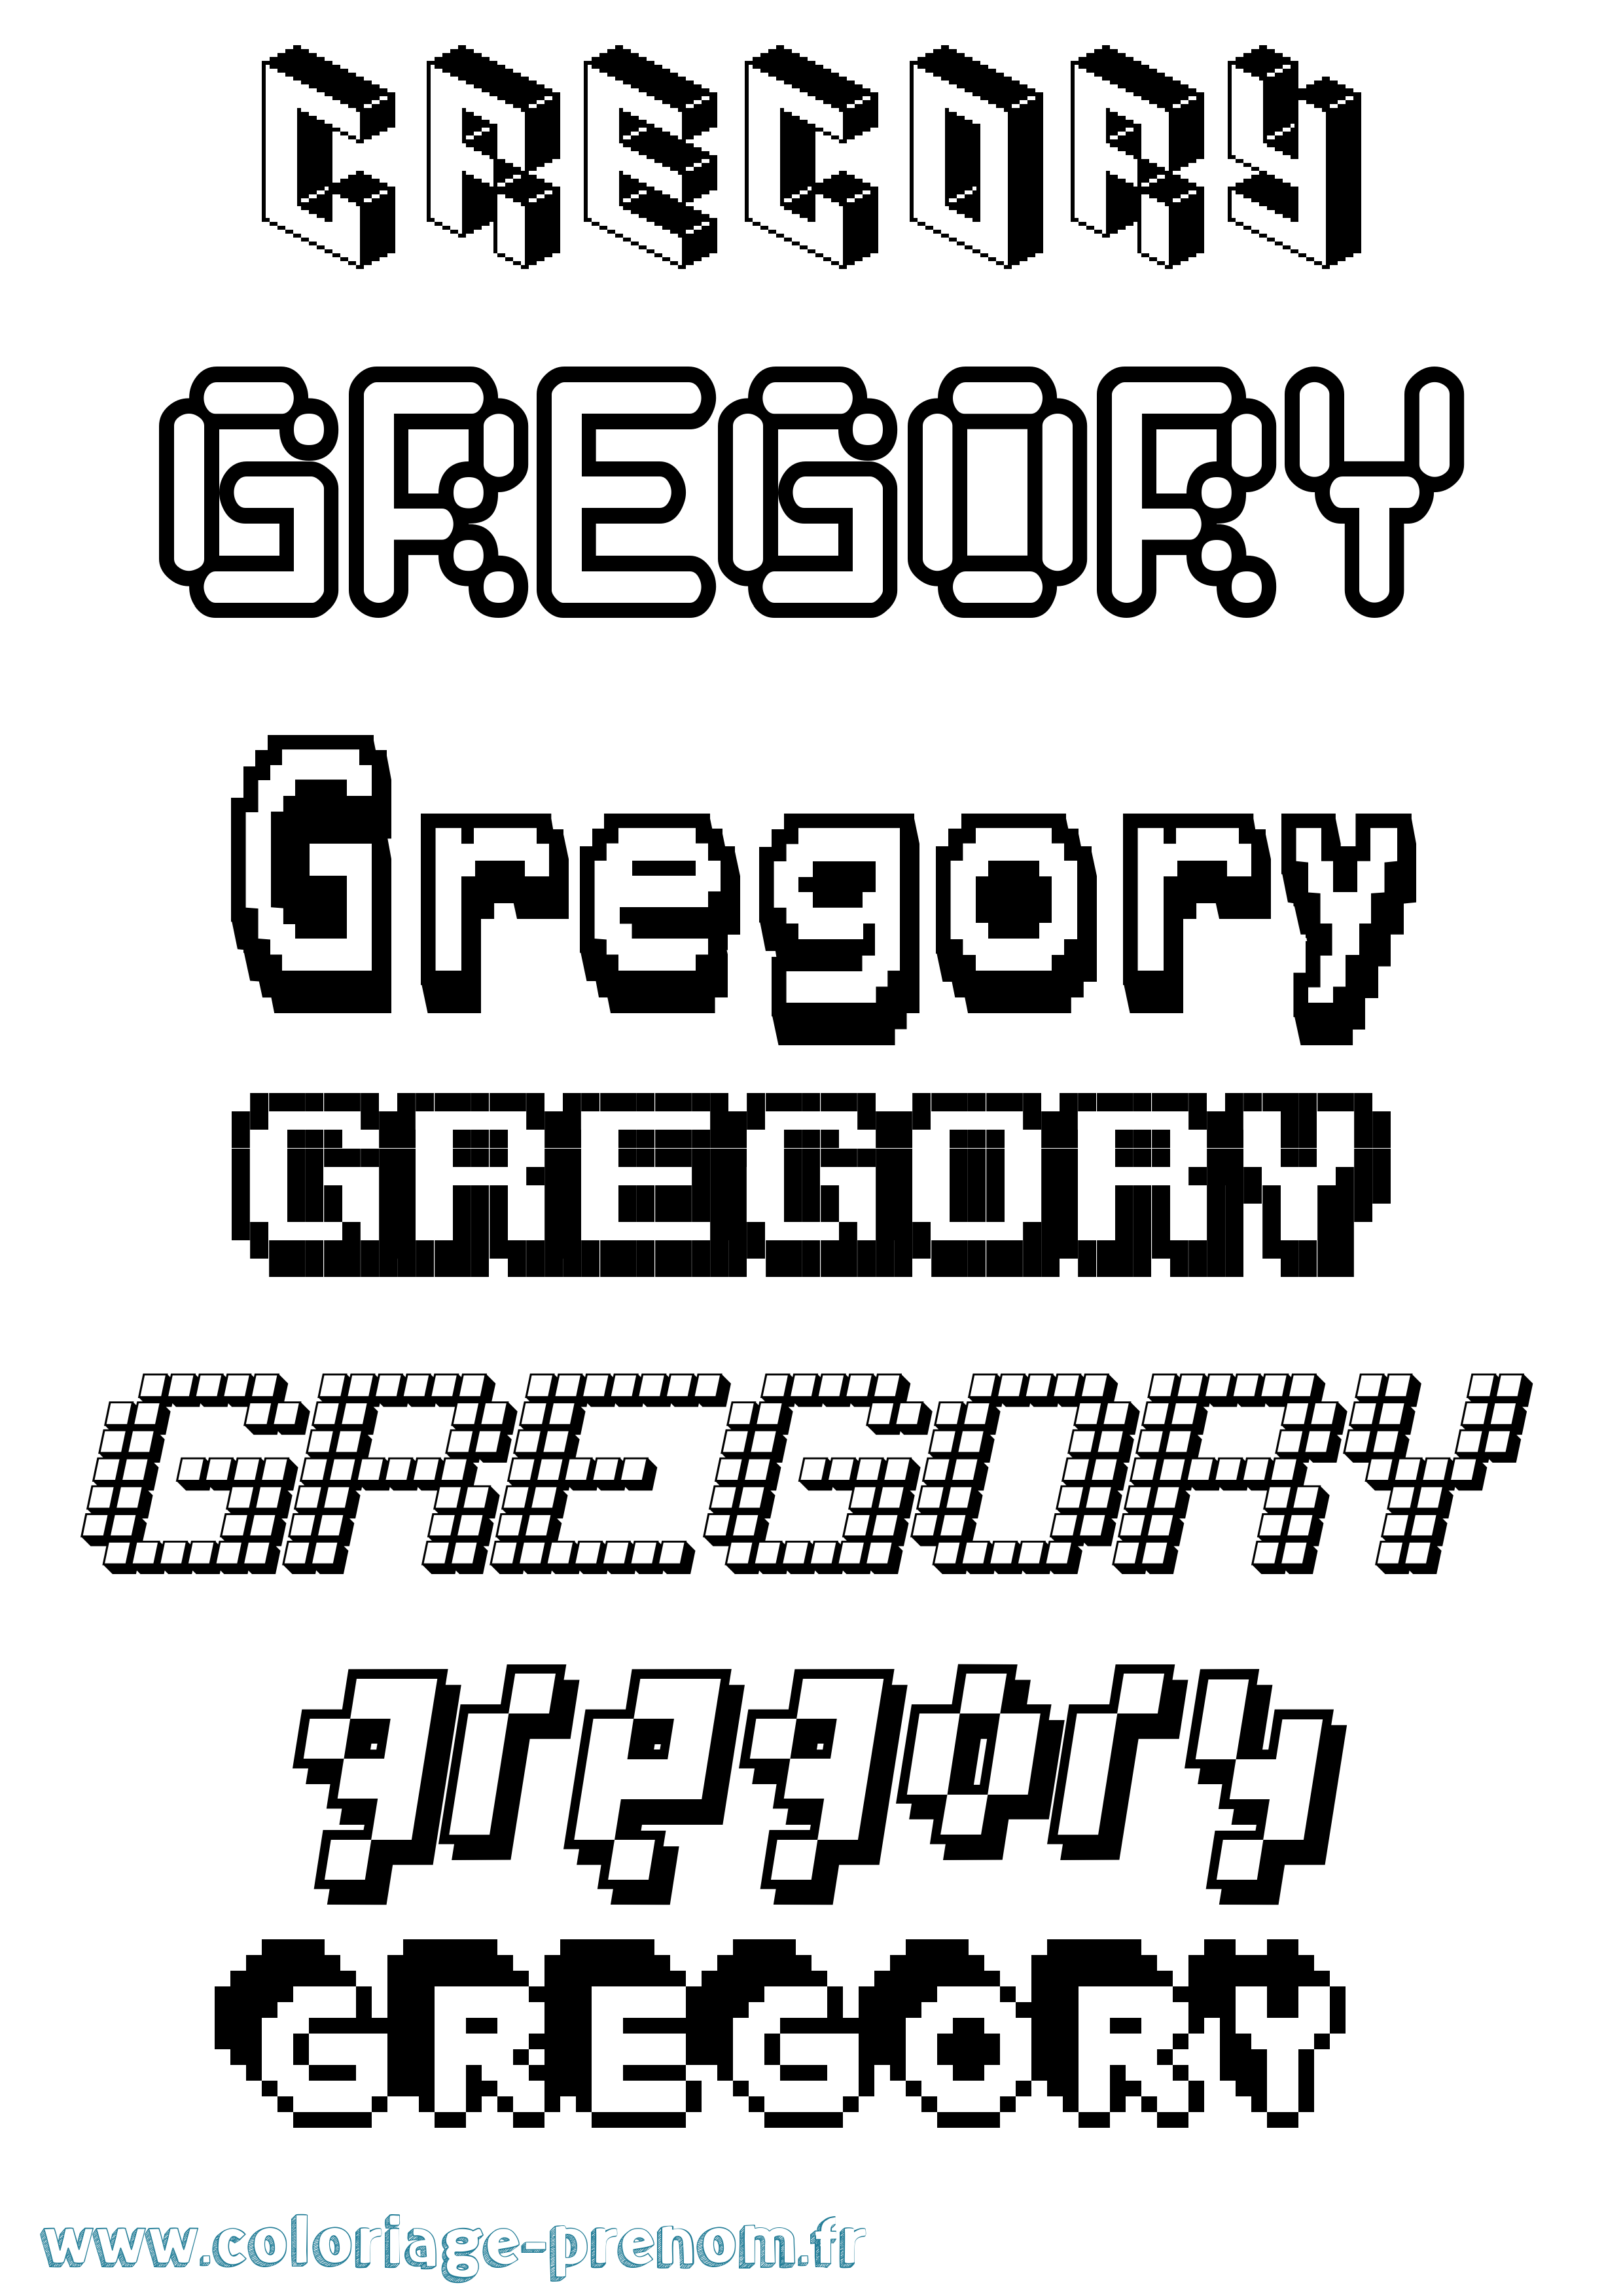 Coloriage prénom Gregory